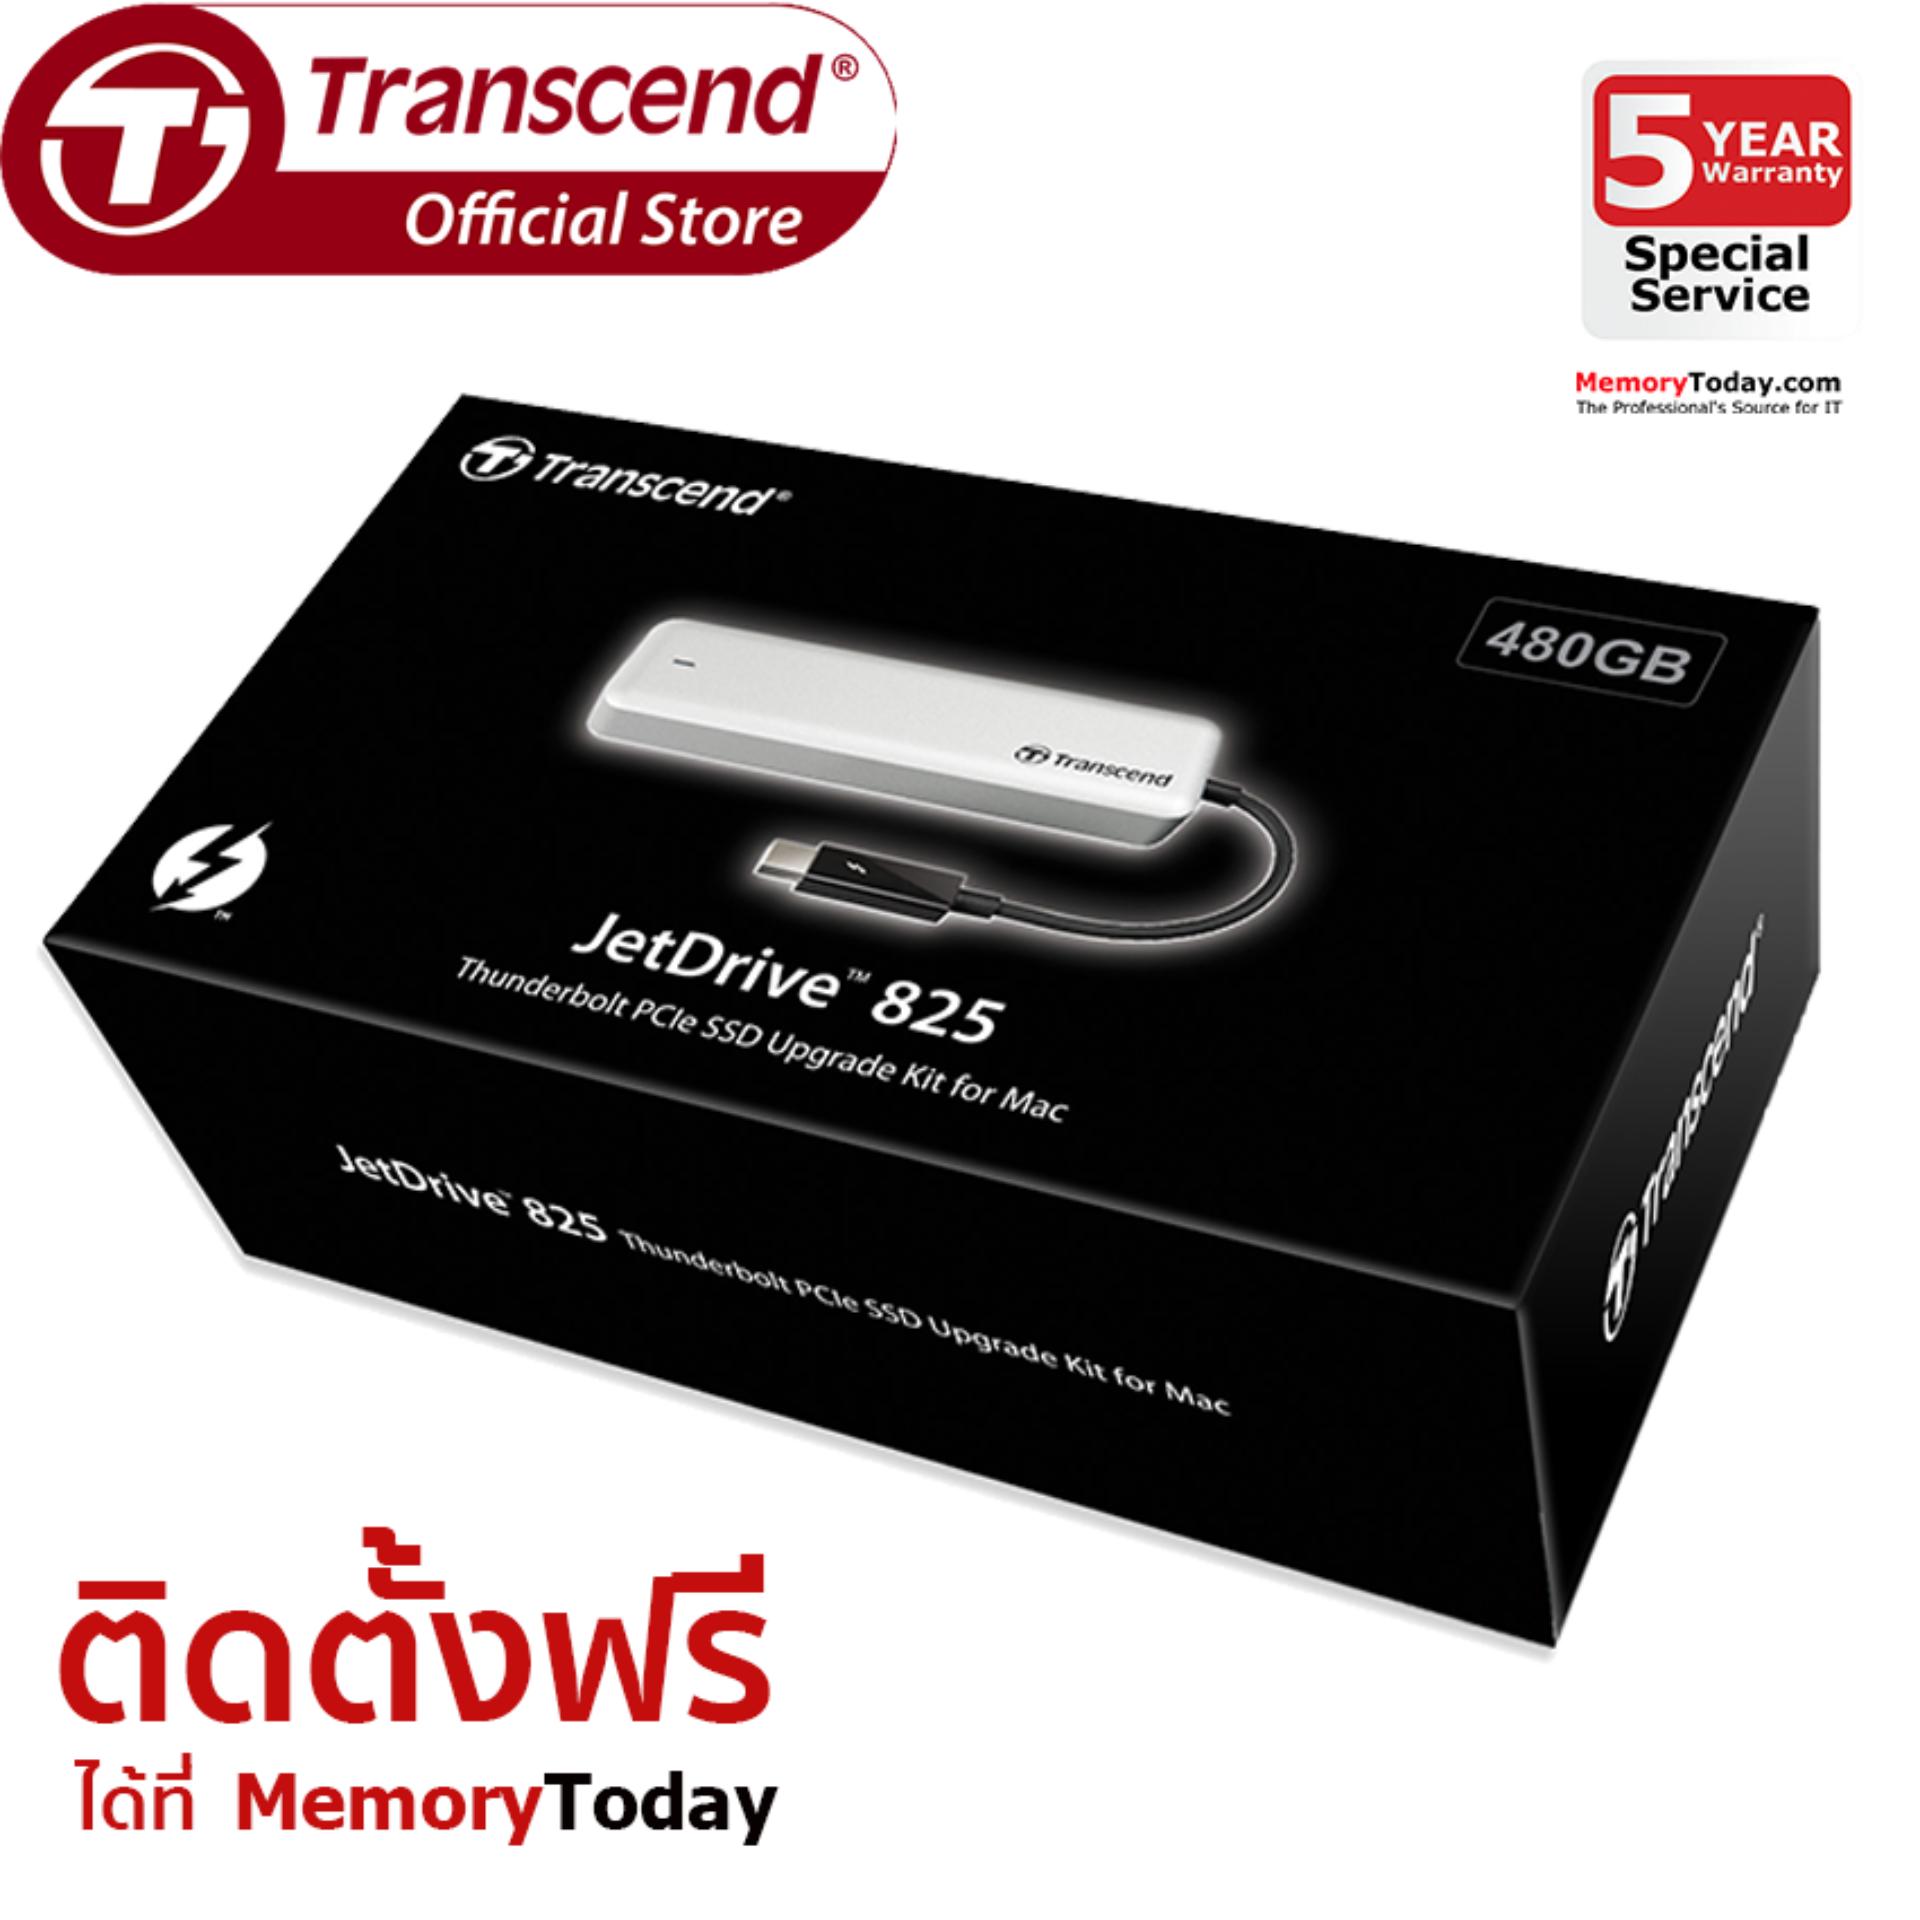 Transcend JetDrive 825 SSD Upgrade Kits for Mac 480GB (TS480GJDM825)